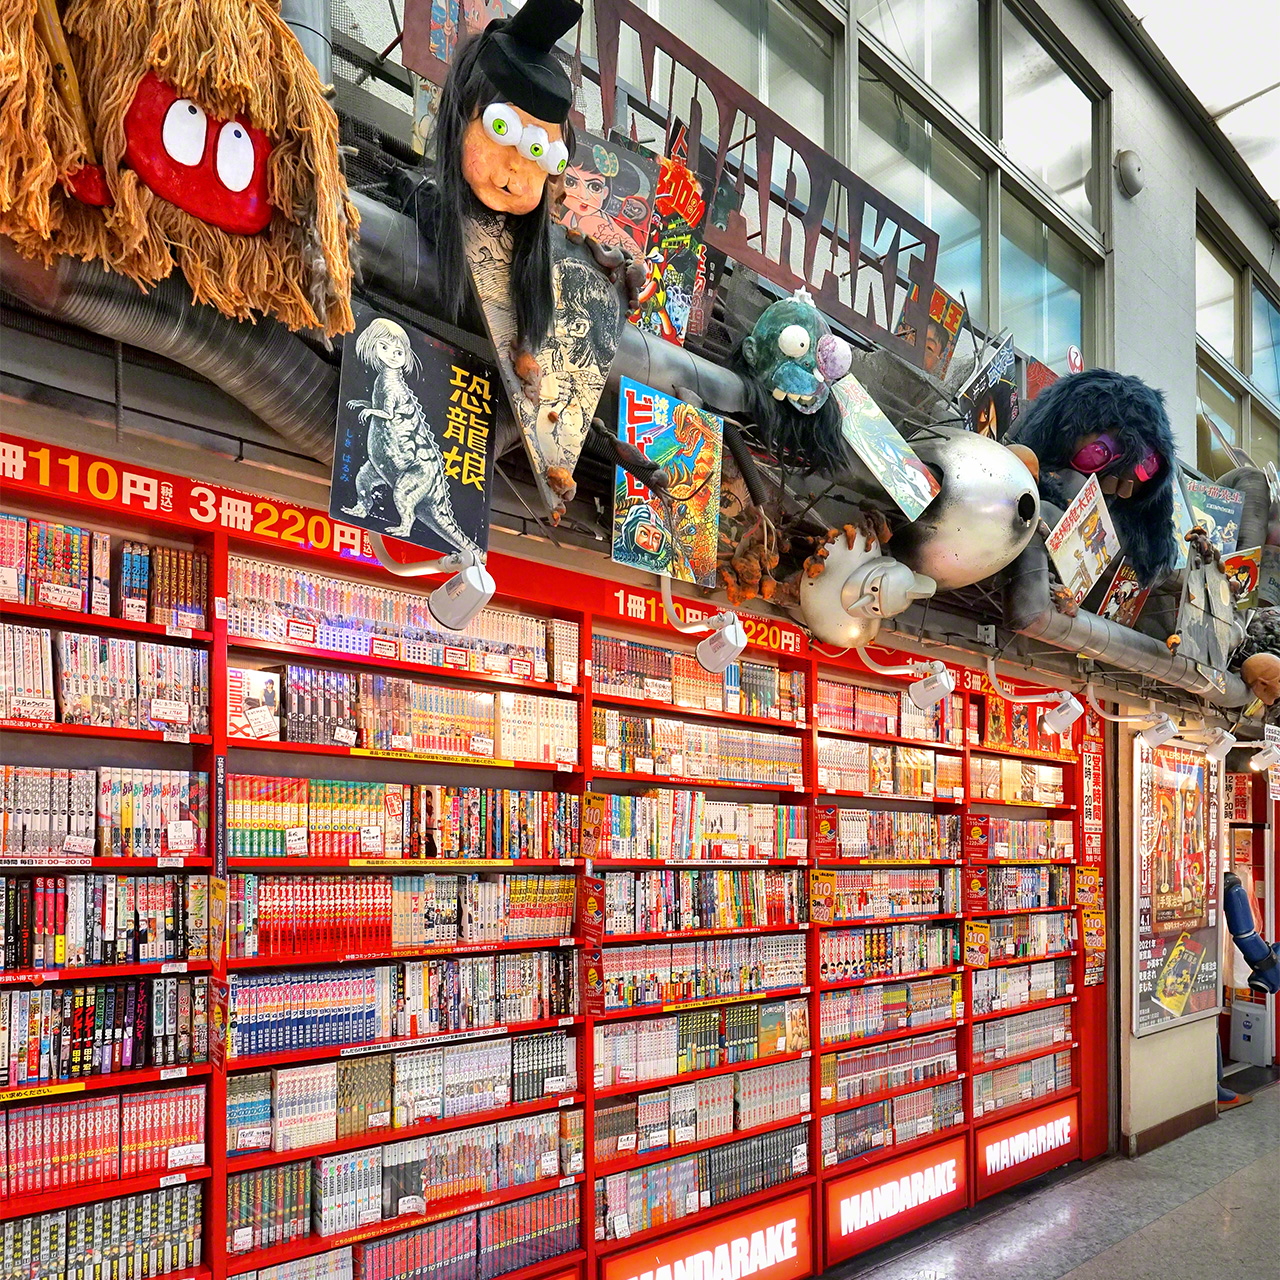 يضم المتجر الرئيسي لمانداراكي في الطابق الثالث مجموعة مذهلة لقصص المانغا المخصصة للأولاد والشباب.